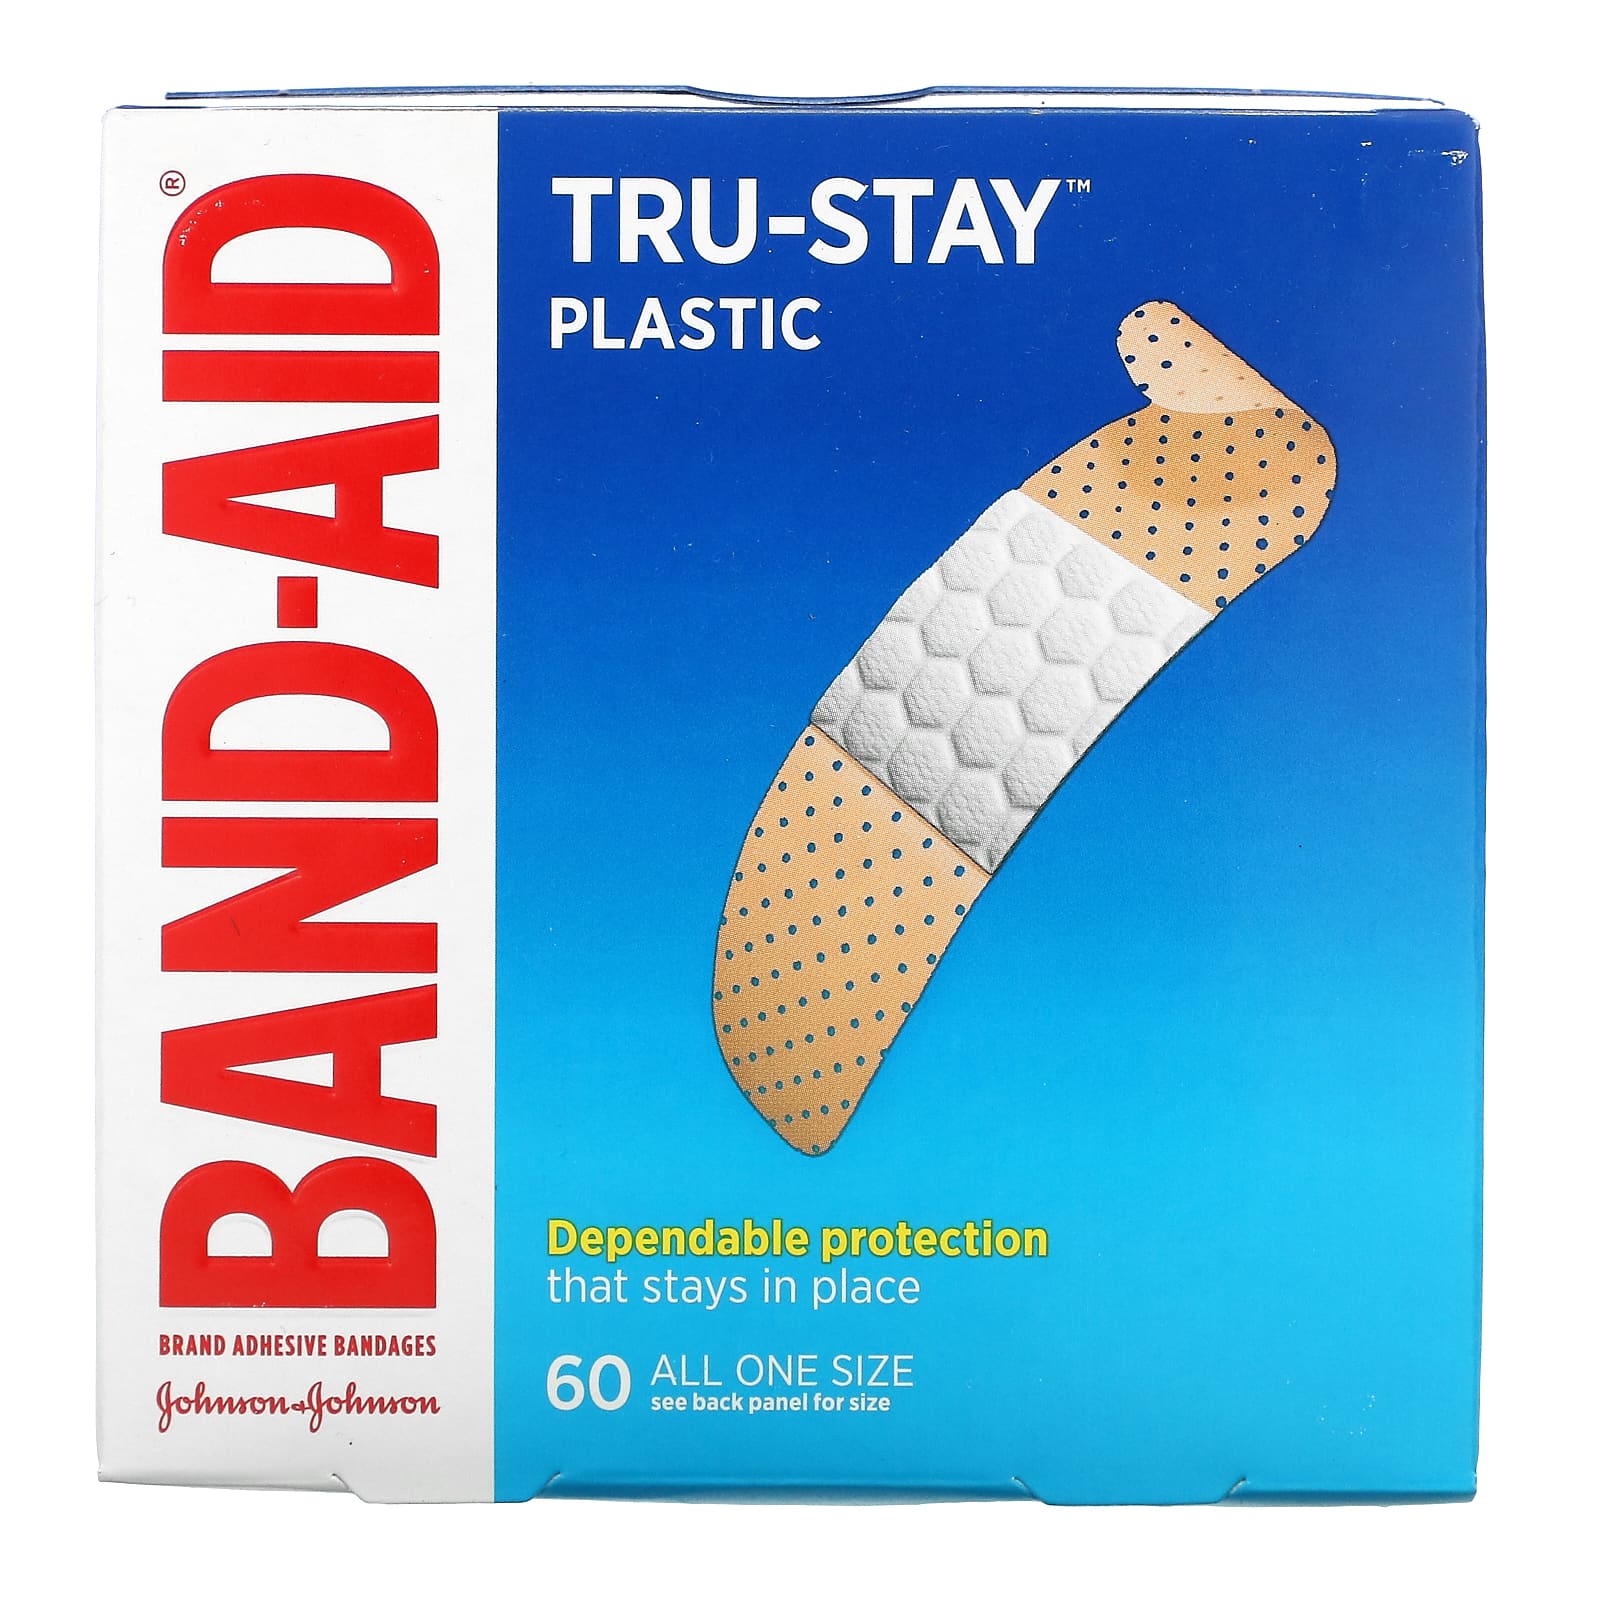 Band Aid Adhesive Bandages Plastic Strips 60 Bandages 100pcs breathable waterproof economic type band aid medical adhesive ok bandage hemostasis patch woundplast